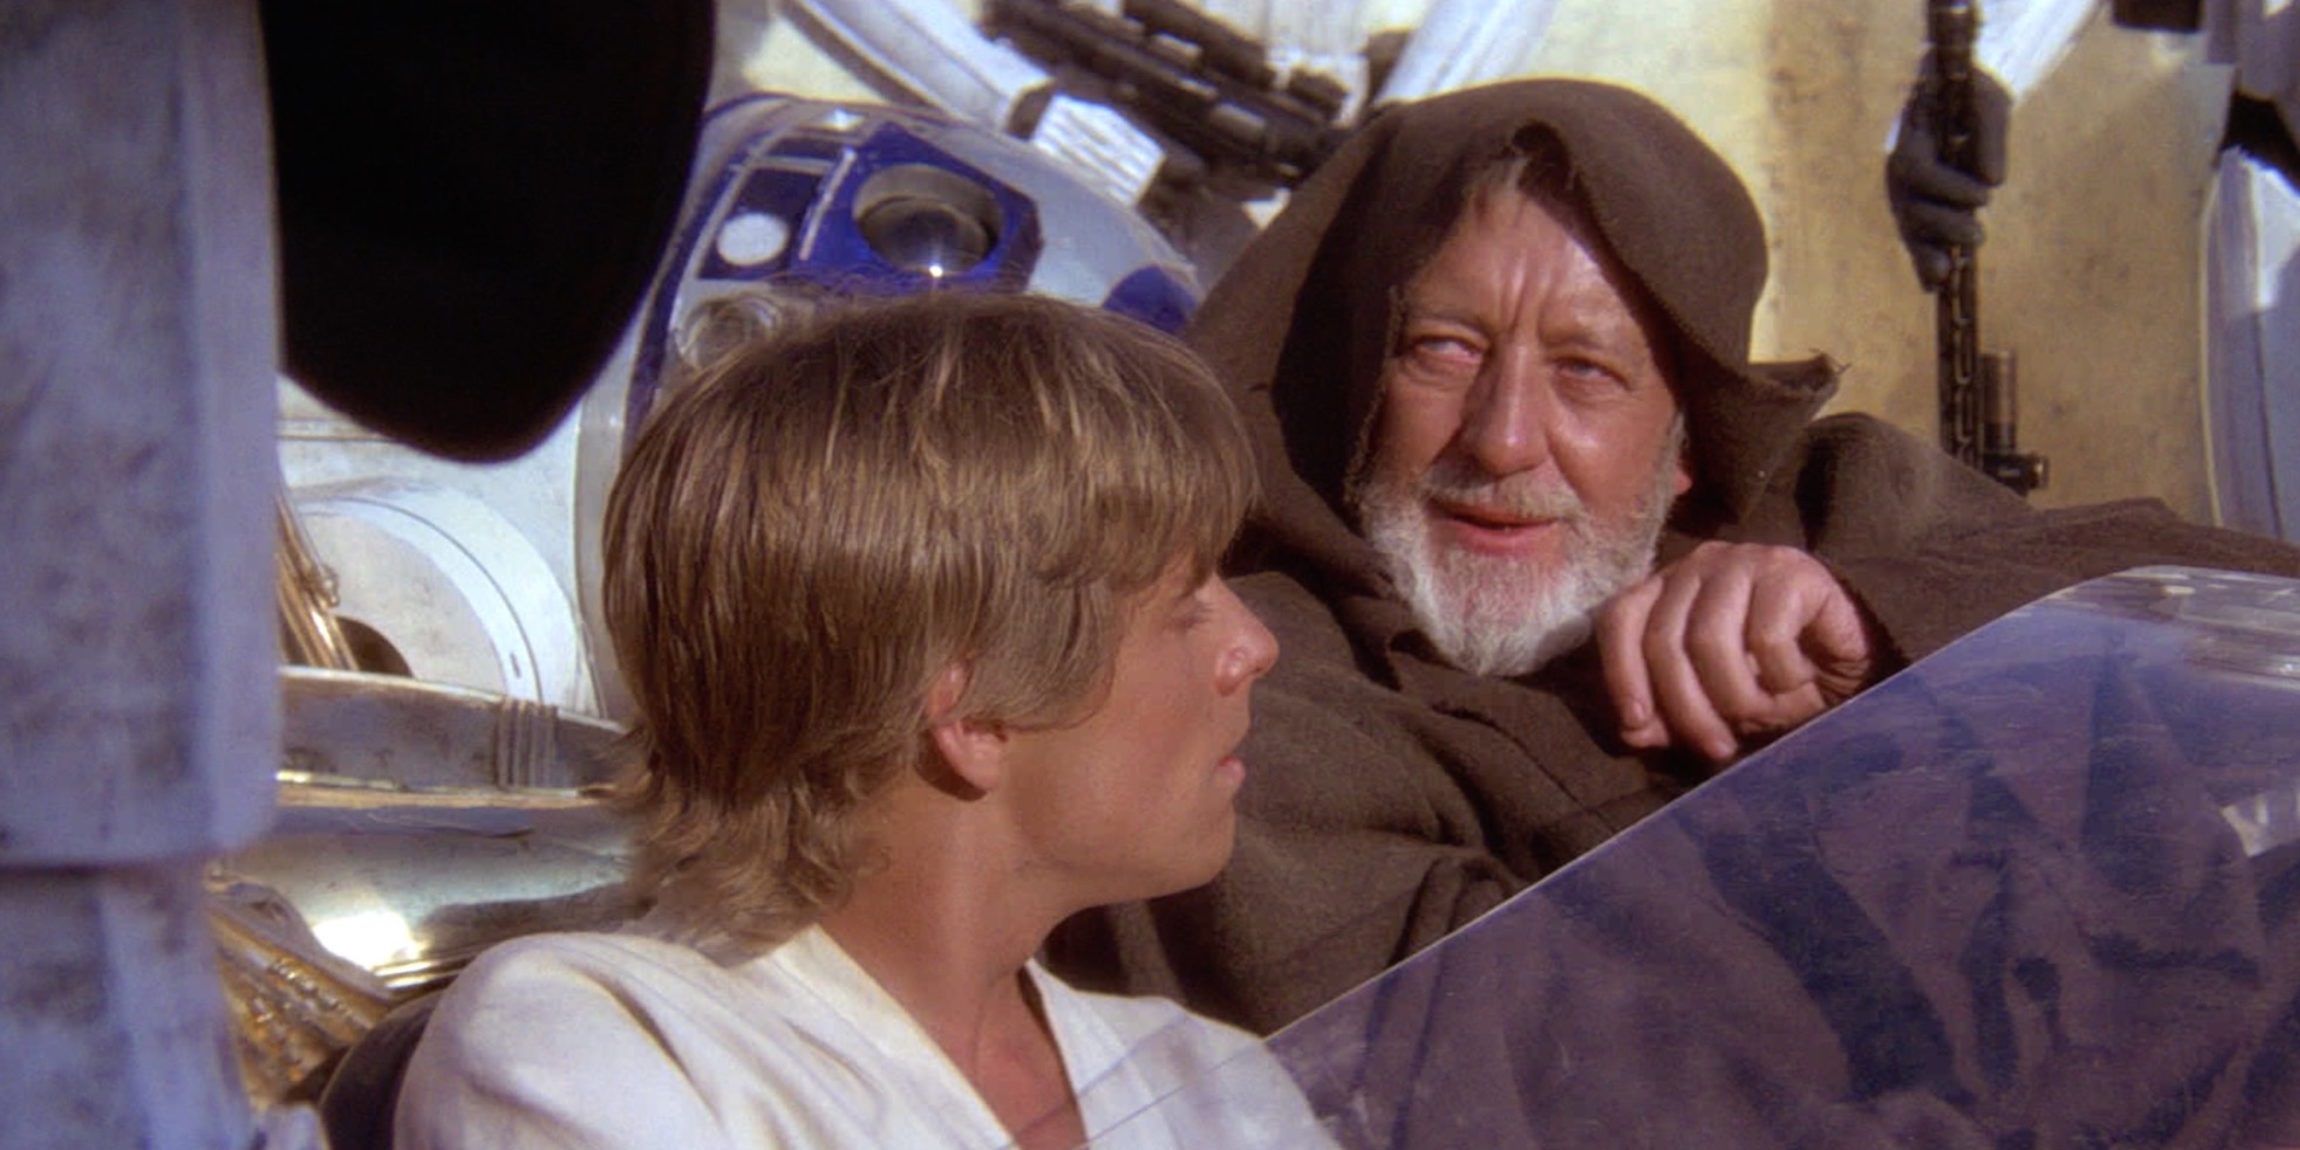 Obi Wan uses the Jedi mind trick in Star Wars